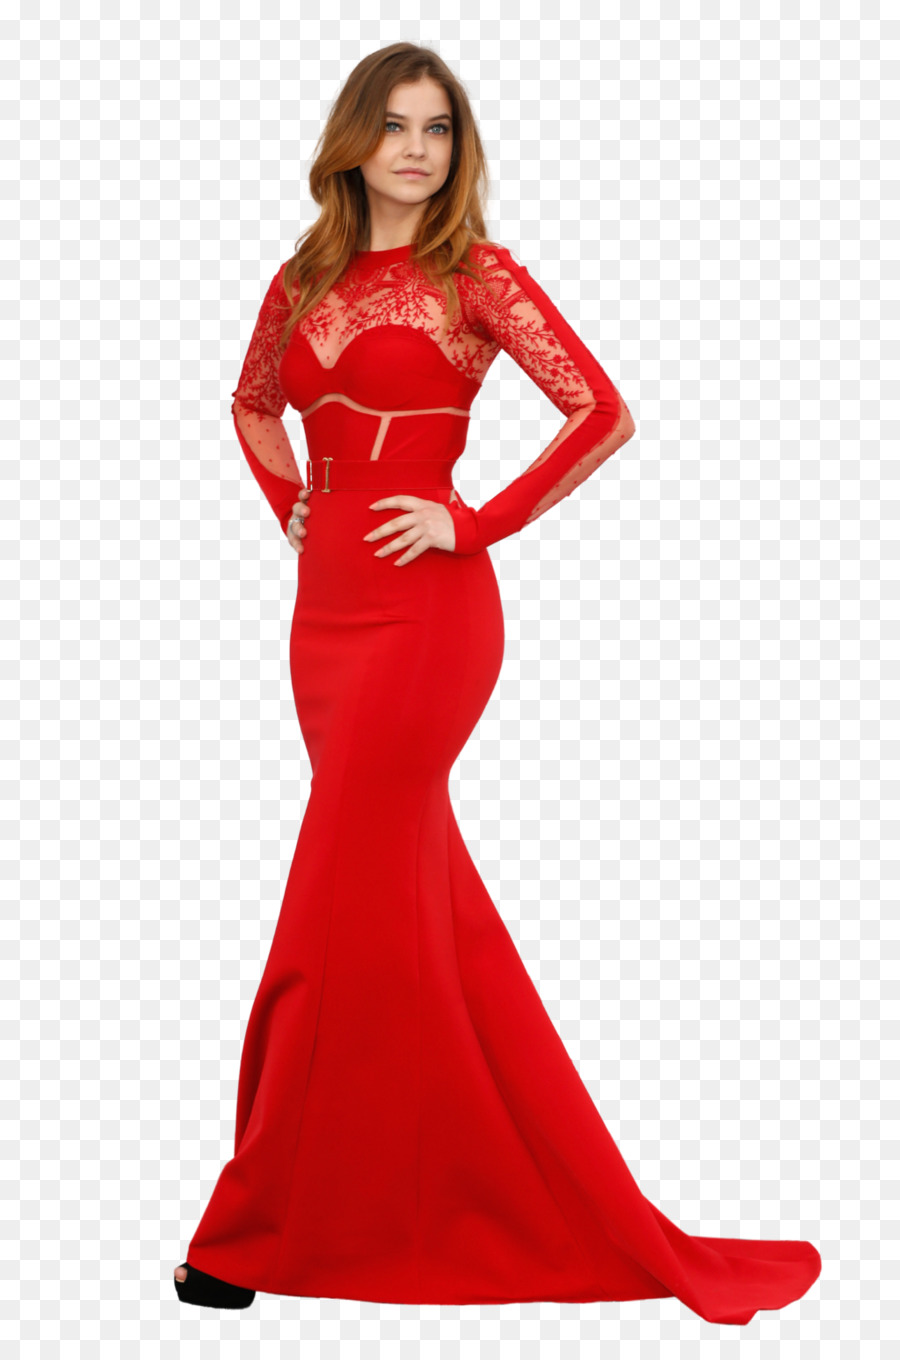 Mô hình chiếc Váy Thời trang xin vui lòng đóng góp, nền Tảng cho Nghiên cứu TRỢ áo Choàng - thảm đỏ